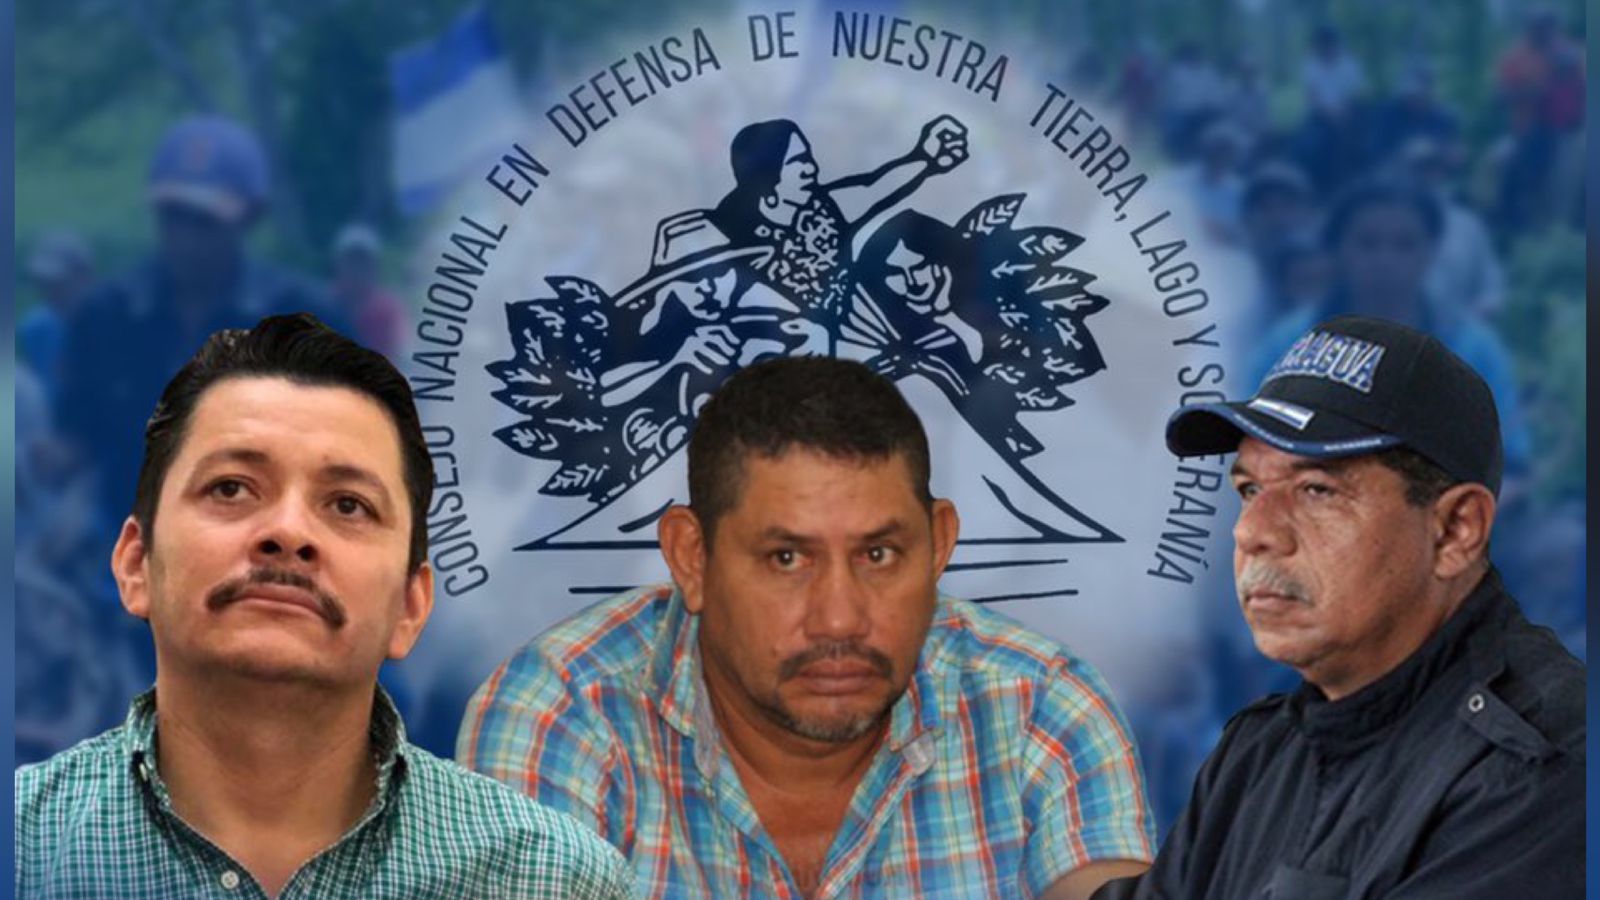 Peasant leaders serve nine months in prison in "El Chipote"